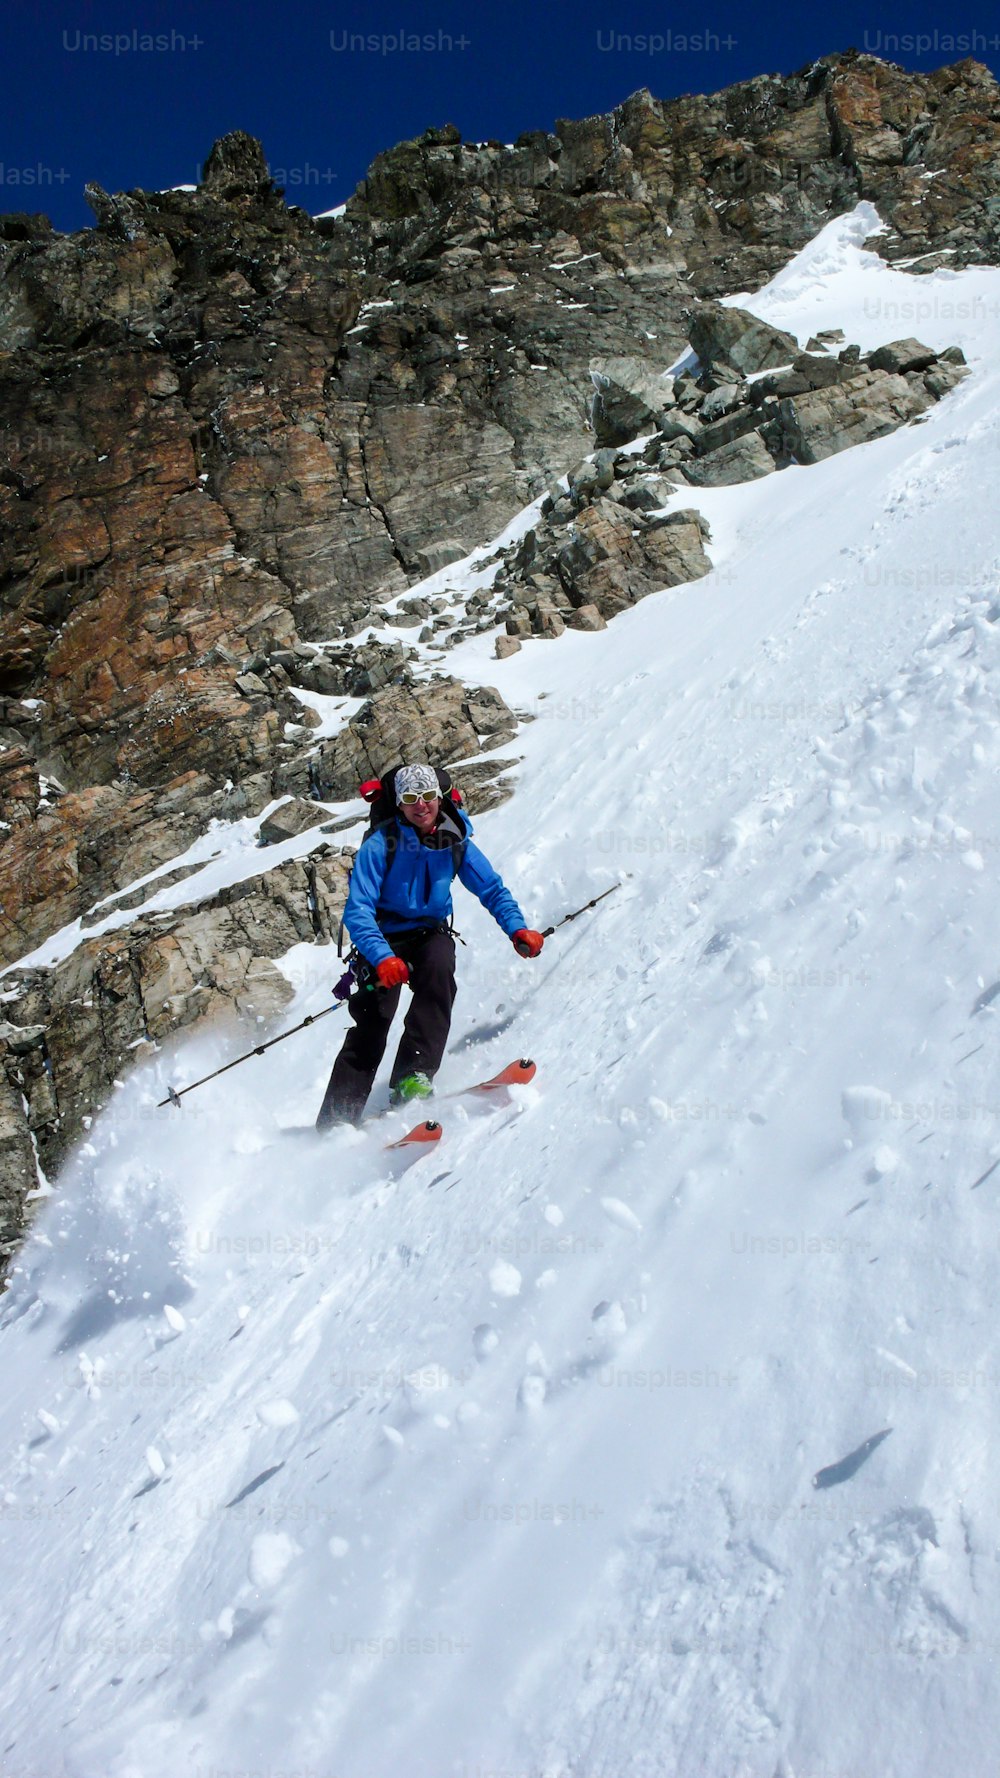 아름다운 겨울날 클로스터(Klosters) 근처 스위스 알프스의 깊은 겨울에 매우 가파른 쿨루아에서 스키를 타는 남성 익스트림 스키어